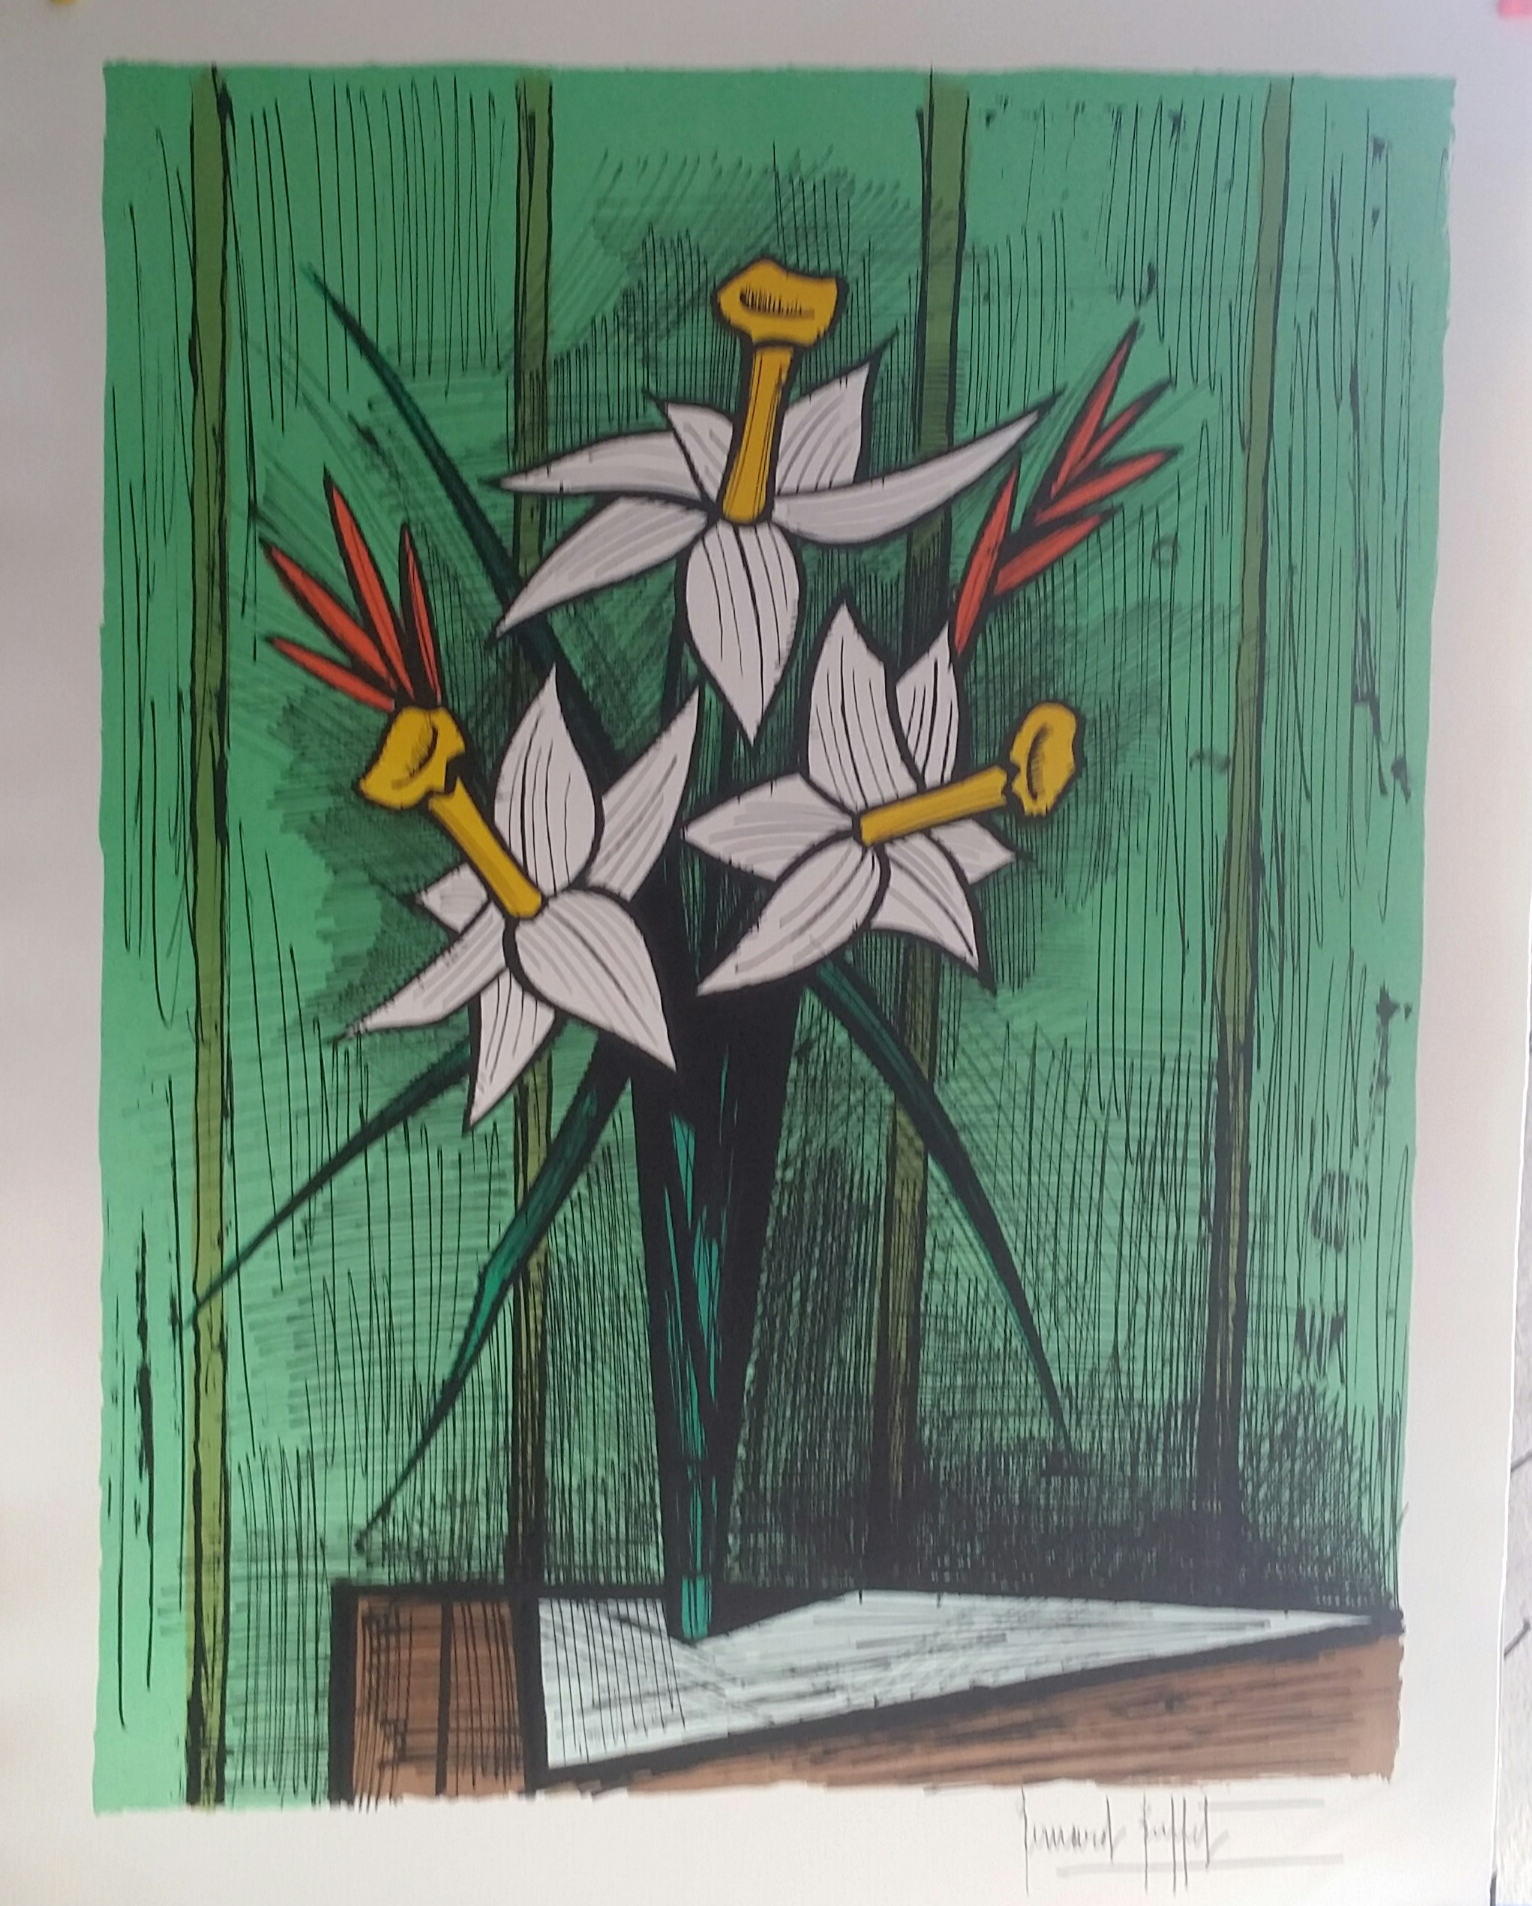 Bernard BUFFET - Bouquet de jonquilles, 1986 - Lithographie originale  signée au crayon - Art Moderne - Plazzart